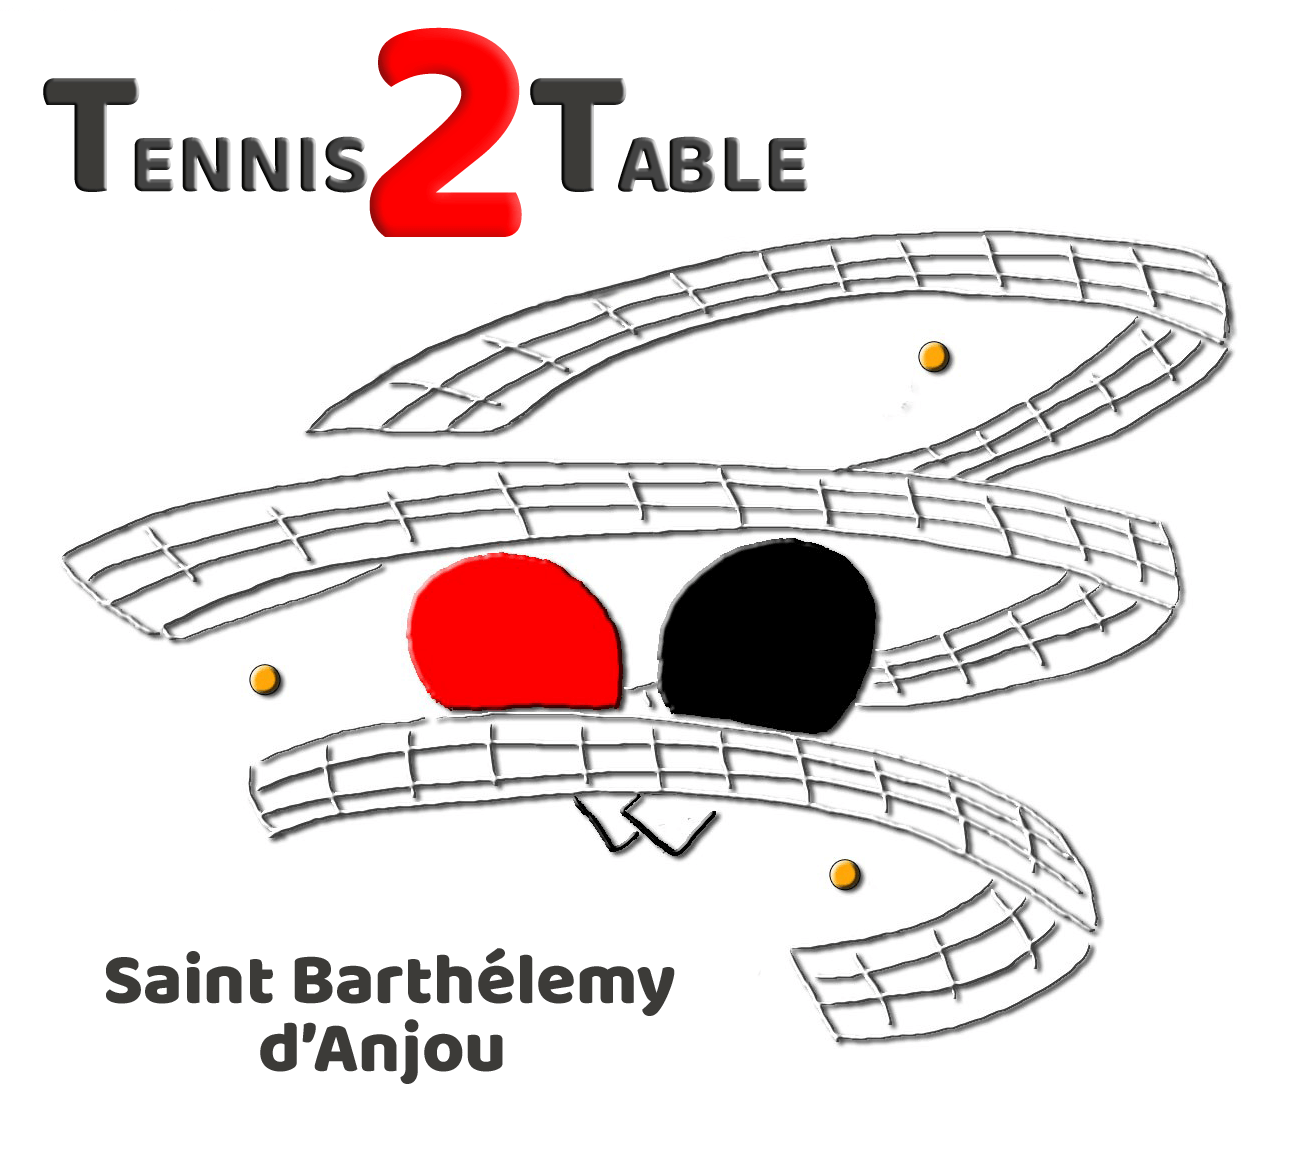 Tennis 2 Table Saint Barthélemy d'Anjou